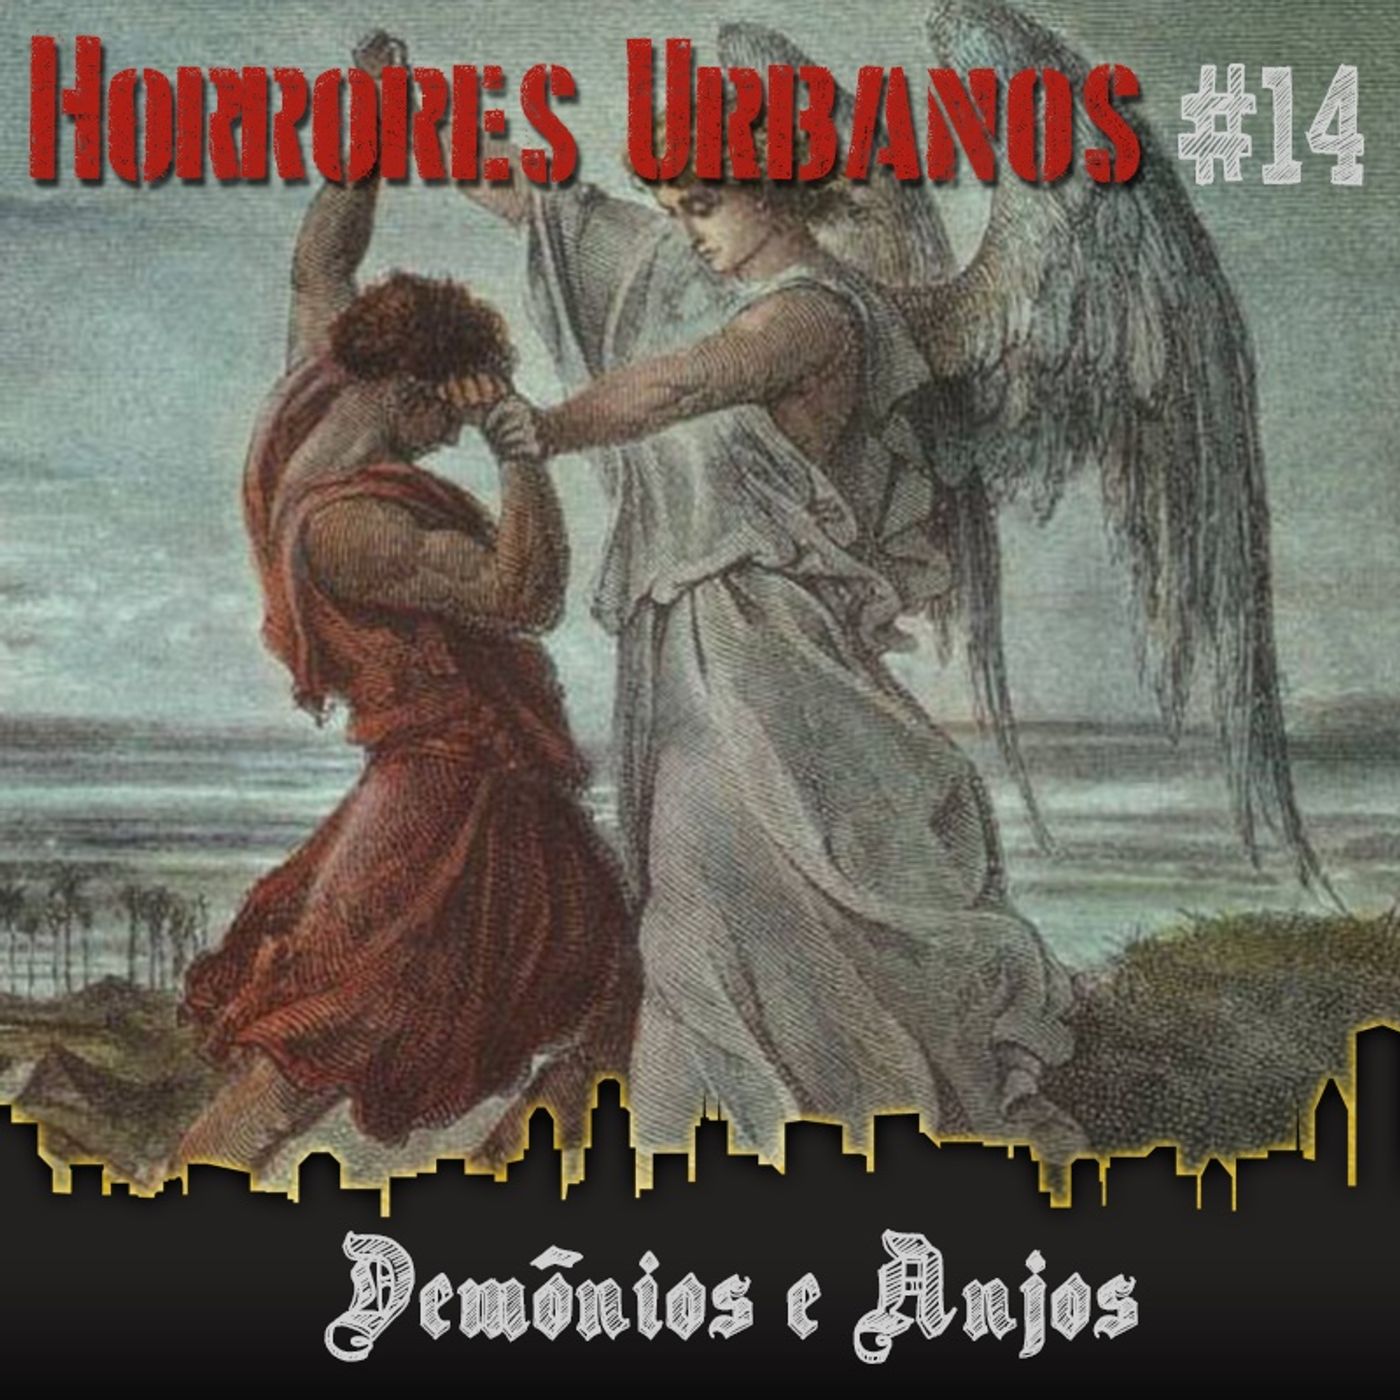 Horrores Urbanos #14: Demônios e Anjos